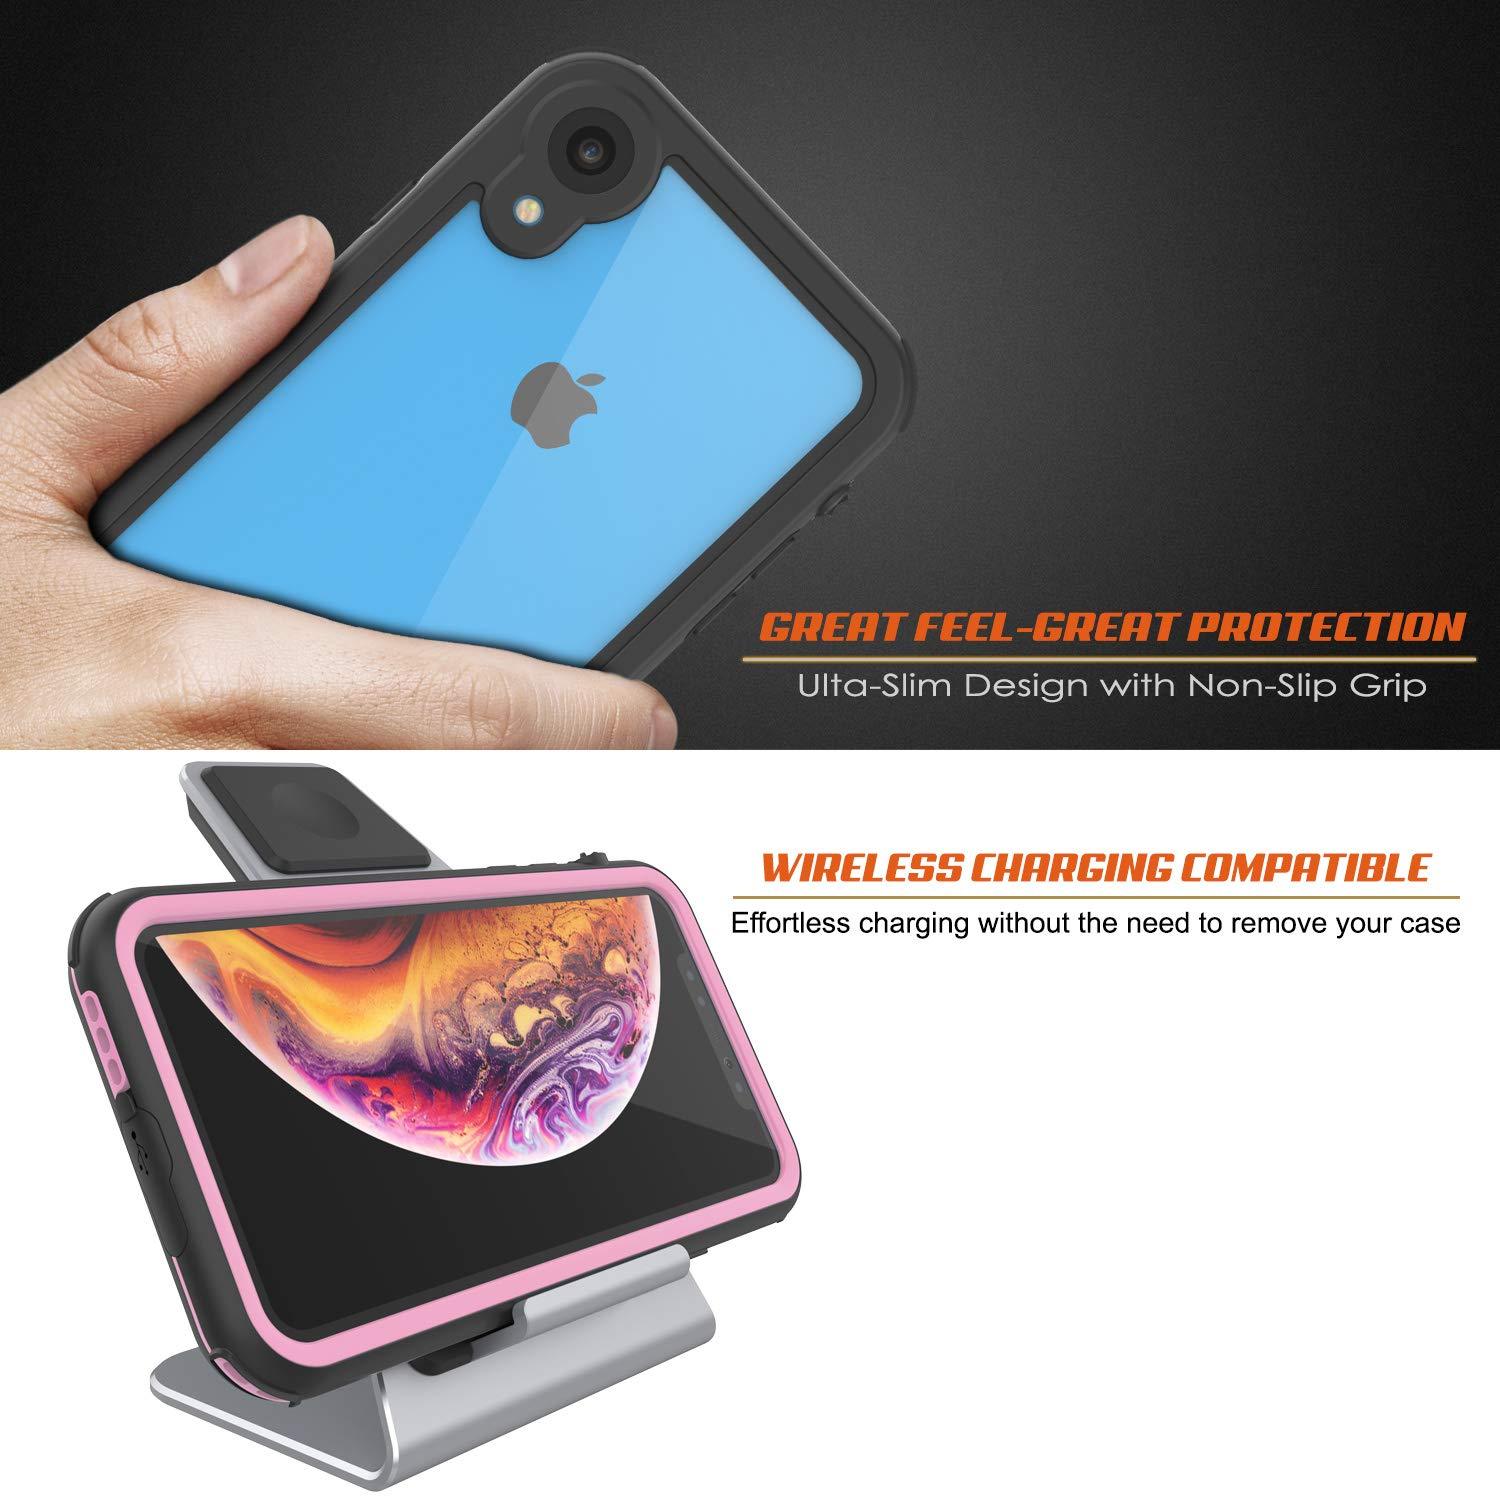 iPhone XR Waterproof IP68 Case, Punkcase [pink] [Rapture Series]  W/Built in Screen Protector